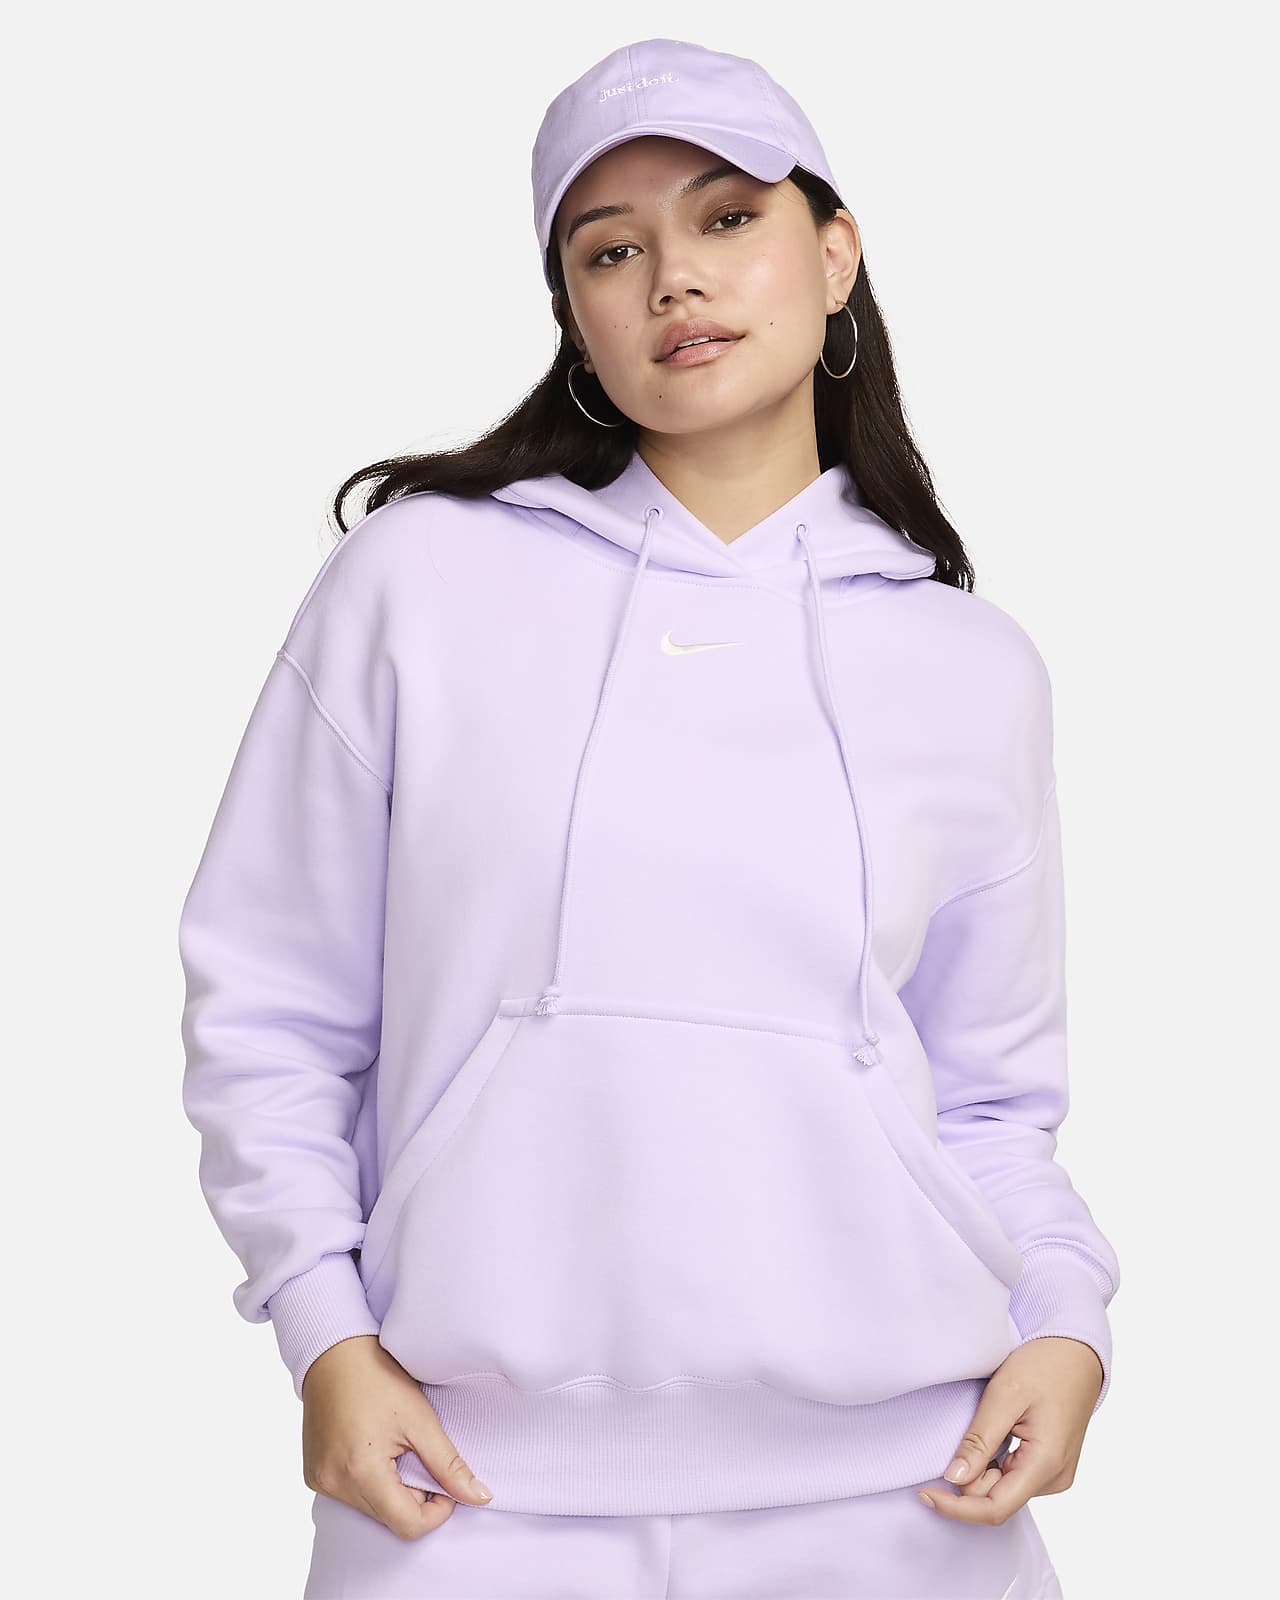 Nike Sportswear Phoenix Fleece Dessuadora amb caputxa oversized - Dona